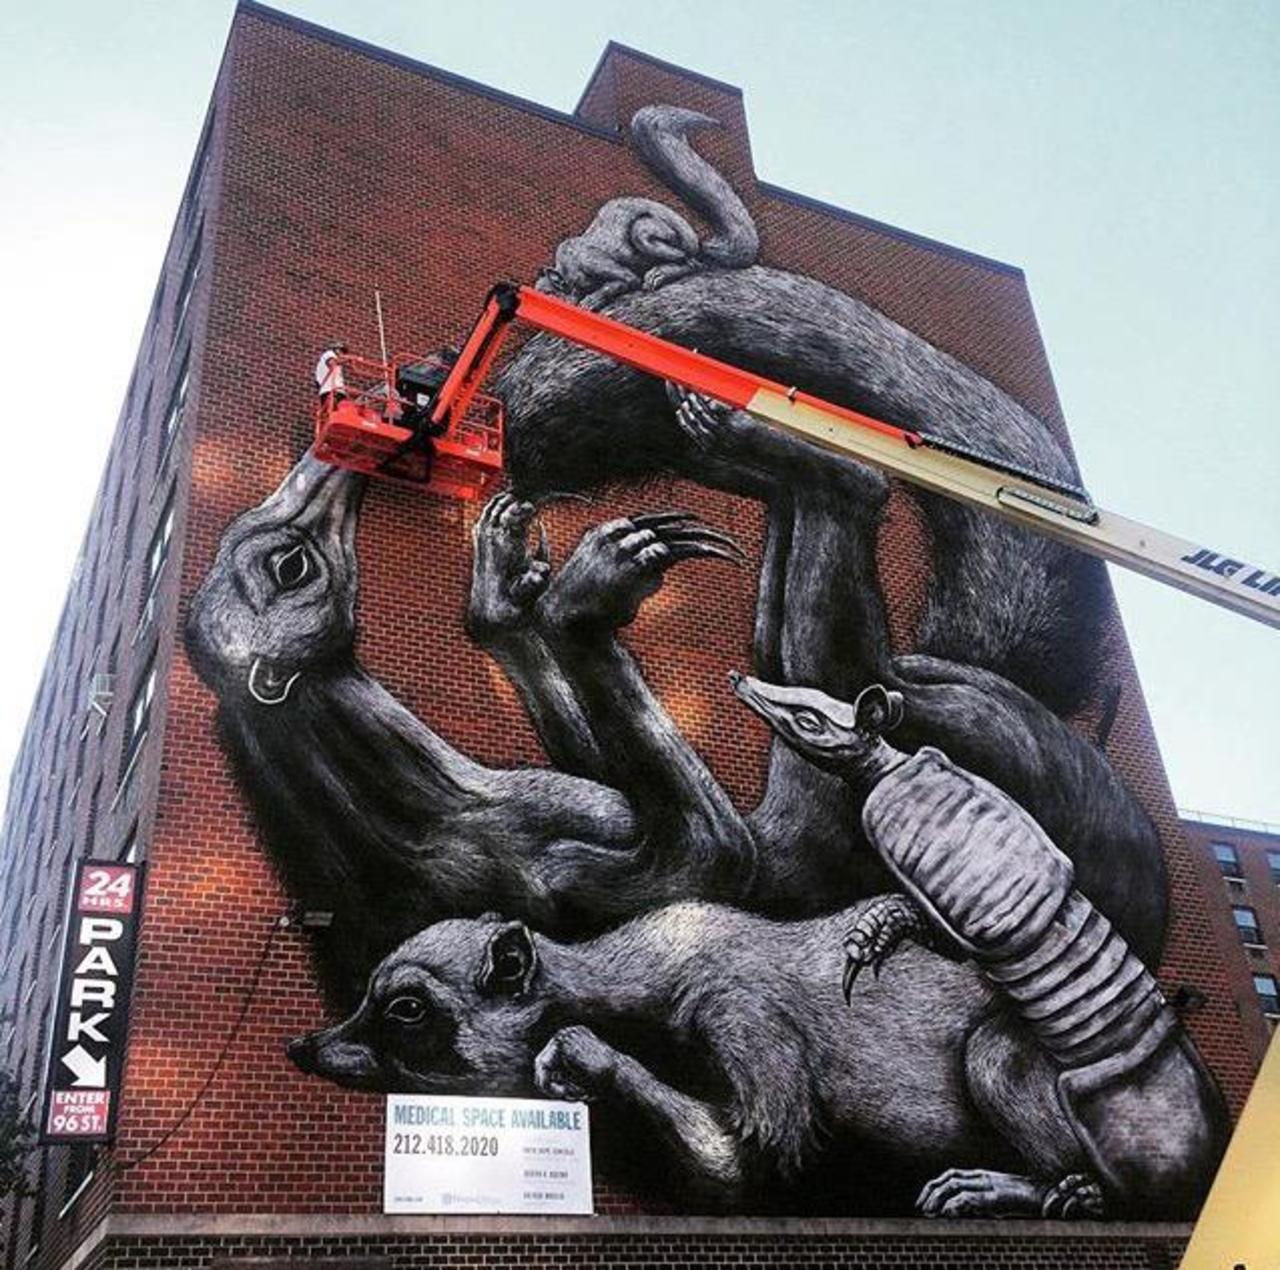 Street Art in progress by ROA in NYC

#art #graffiti #mural #streetart http://t.co/JudQnpJ3wW